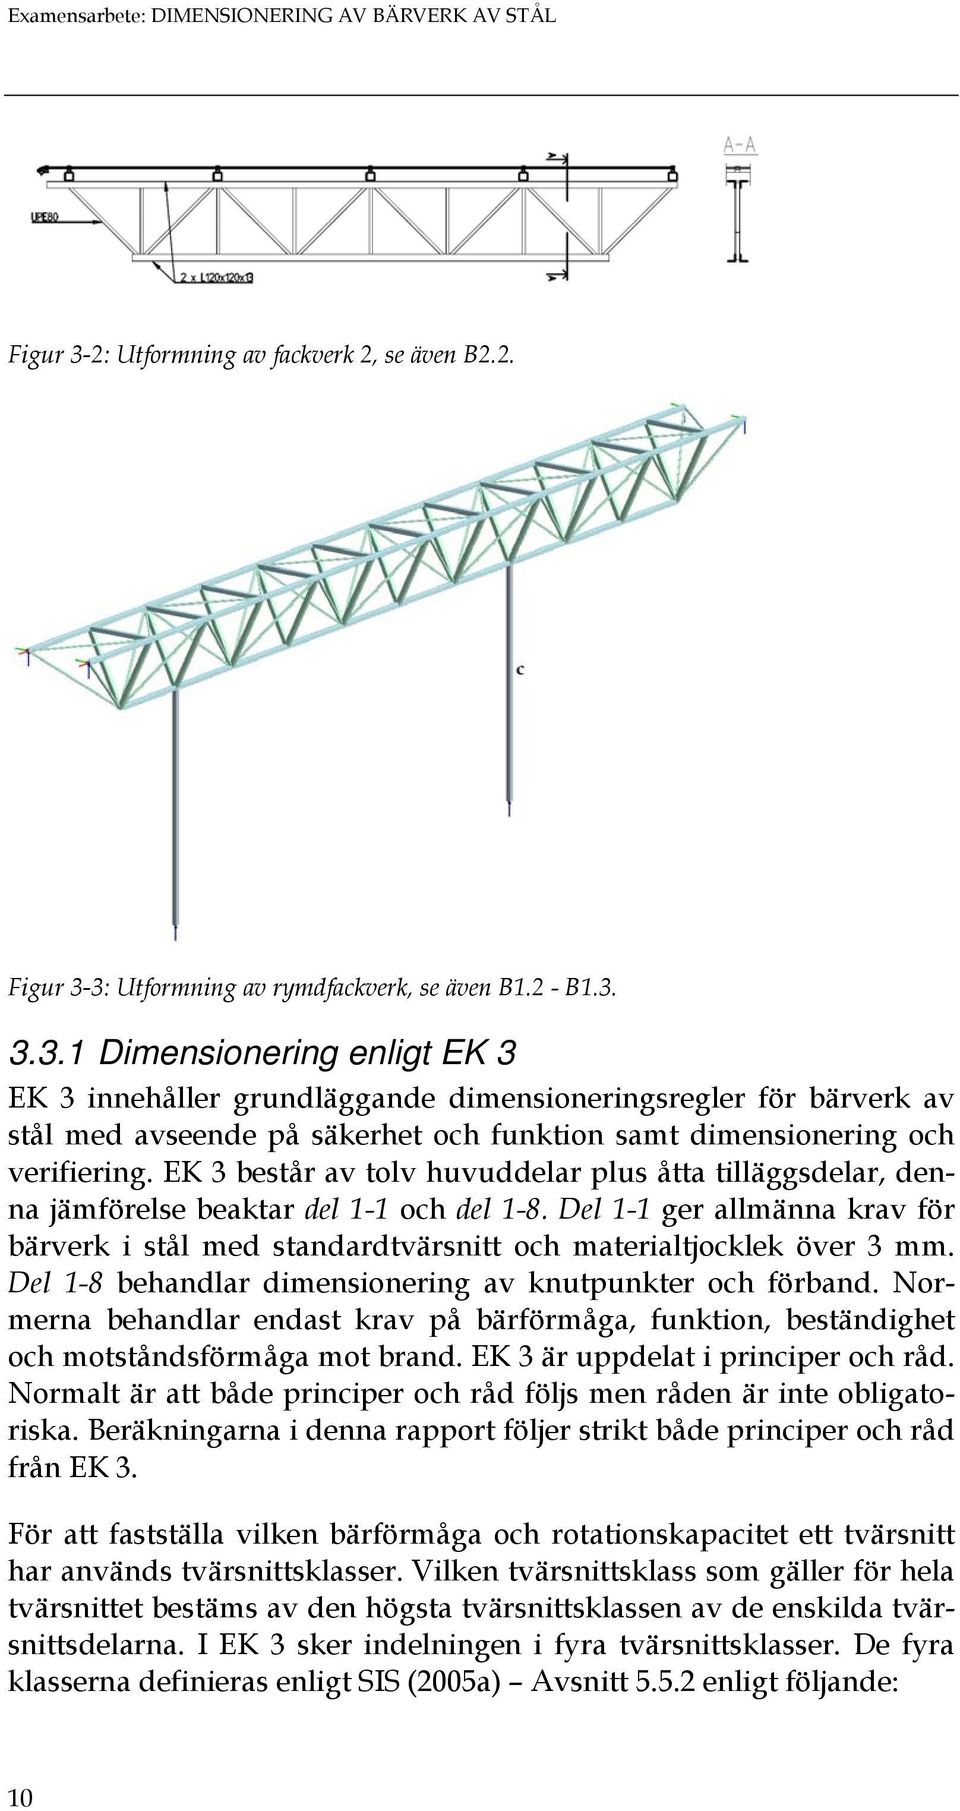 3: Utformning av rymdfackverk, se även B1.2 - B1.3. 3.3.1 Dimensionering enligt EK 3 EK 3 innehåller grundläggande dimensioneringsregler för bärverk av stål med avseende på säkerhet och funktion samt dimensionering och verifiering.